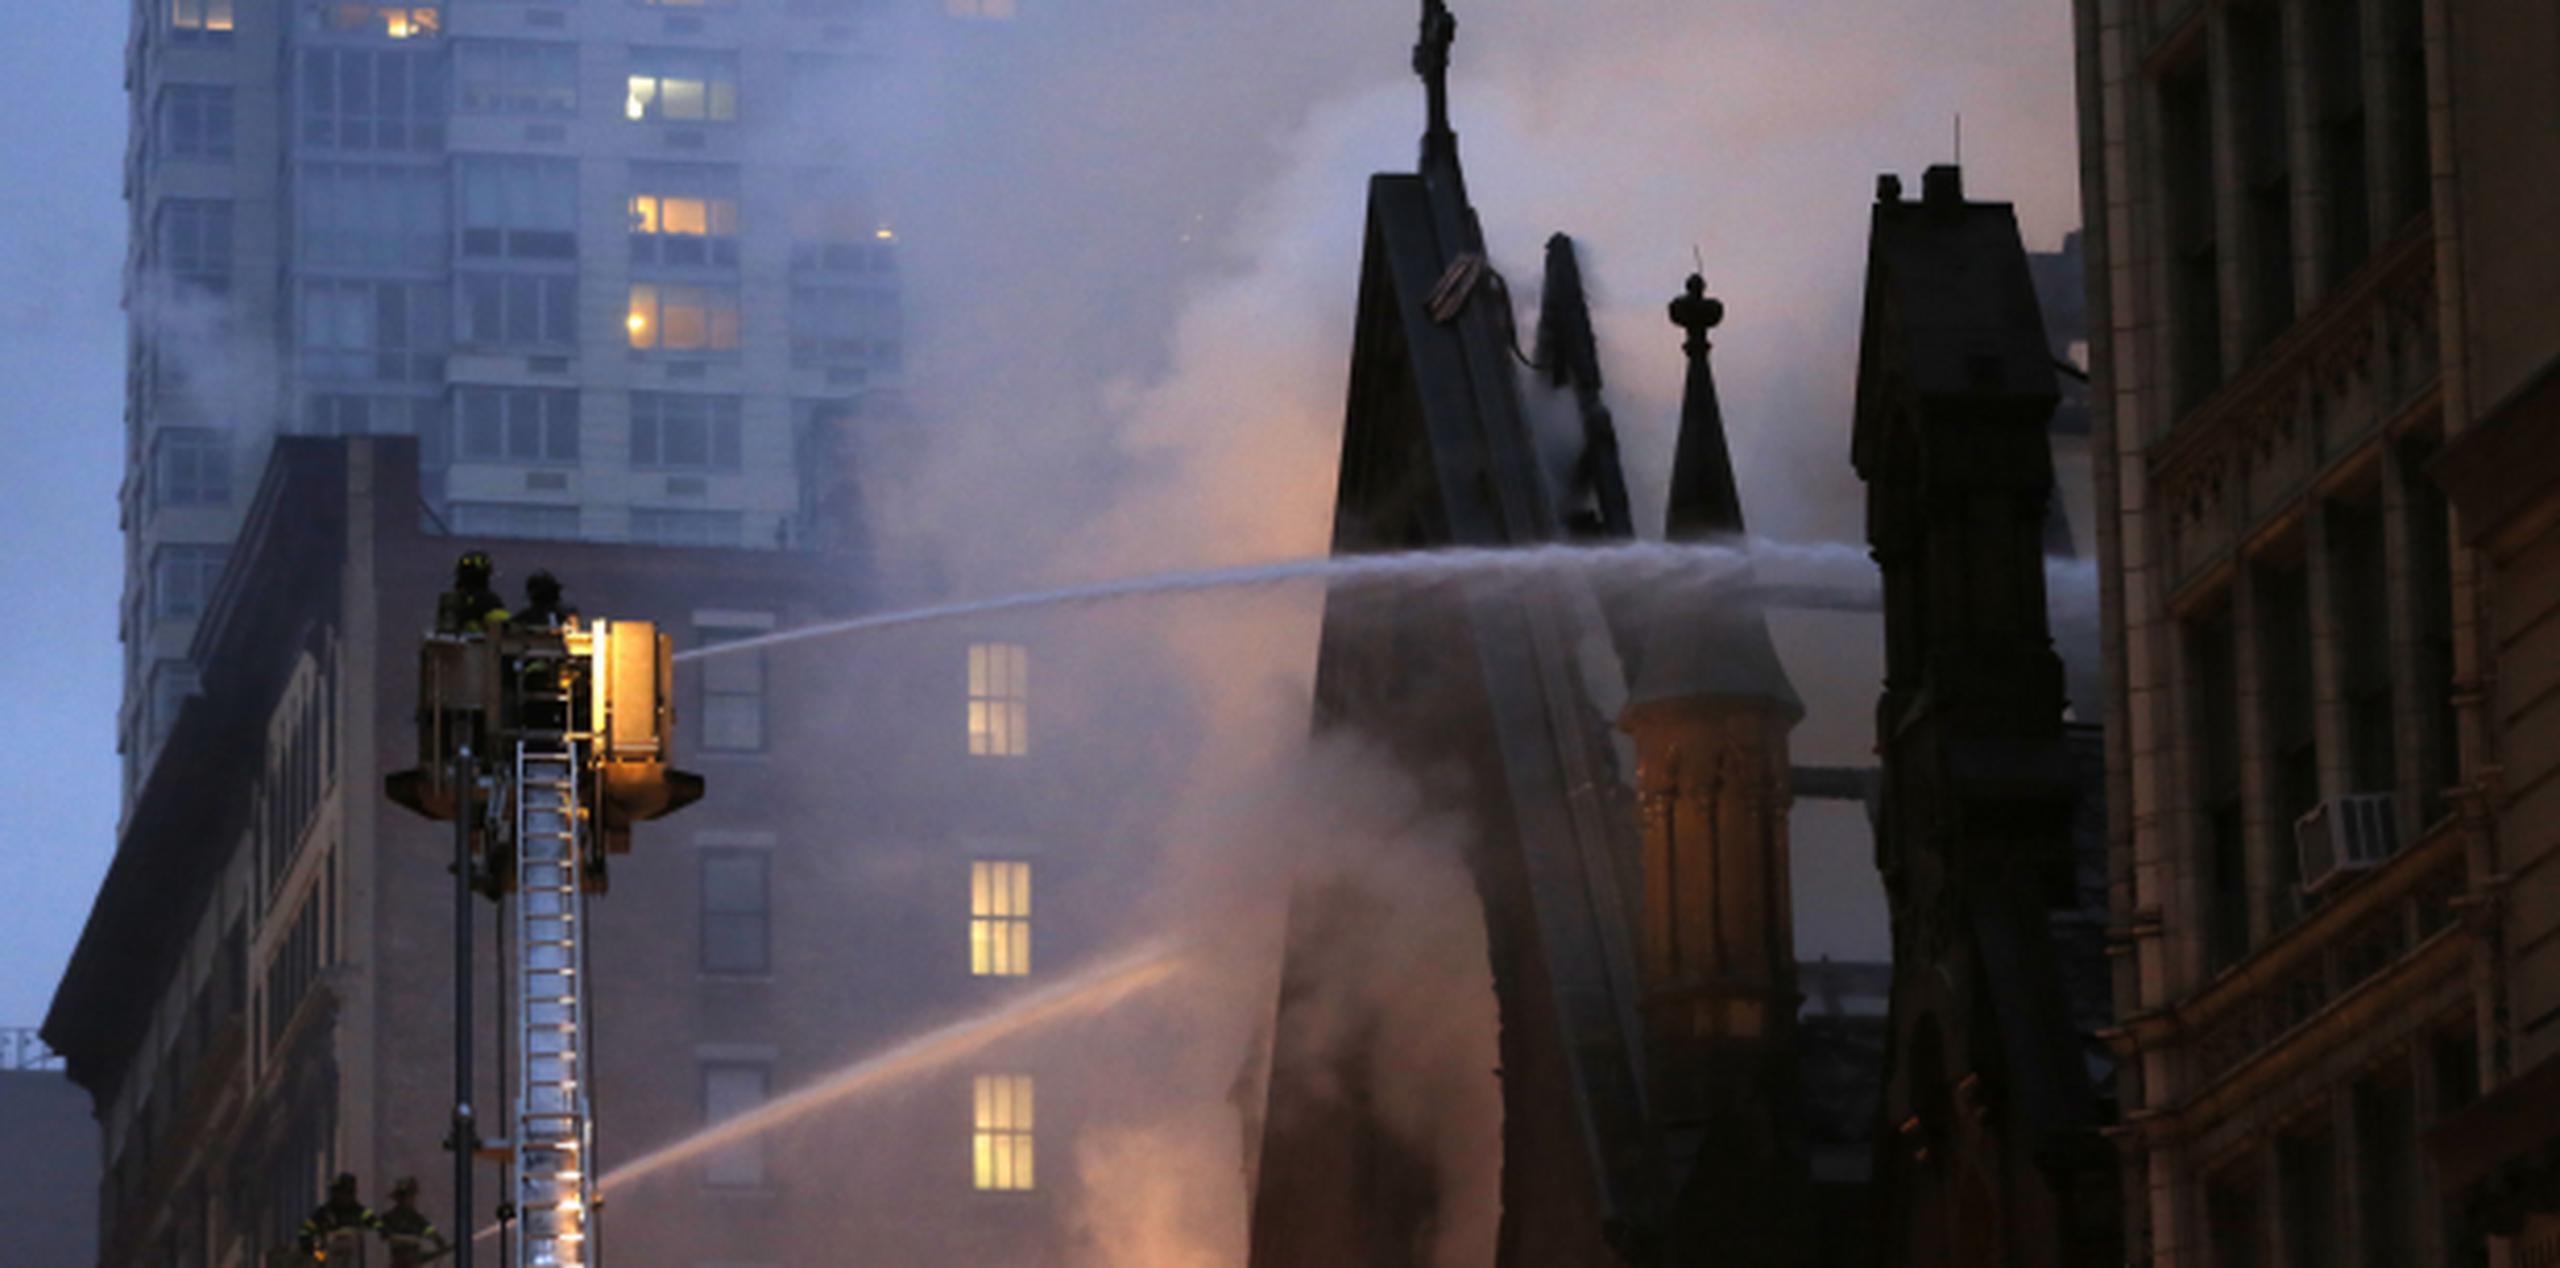 Provocó densas columnas de humo que se elevaban sobre la ciudad. (AP Photo/Kathy Willens)